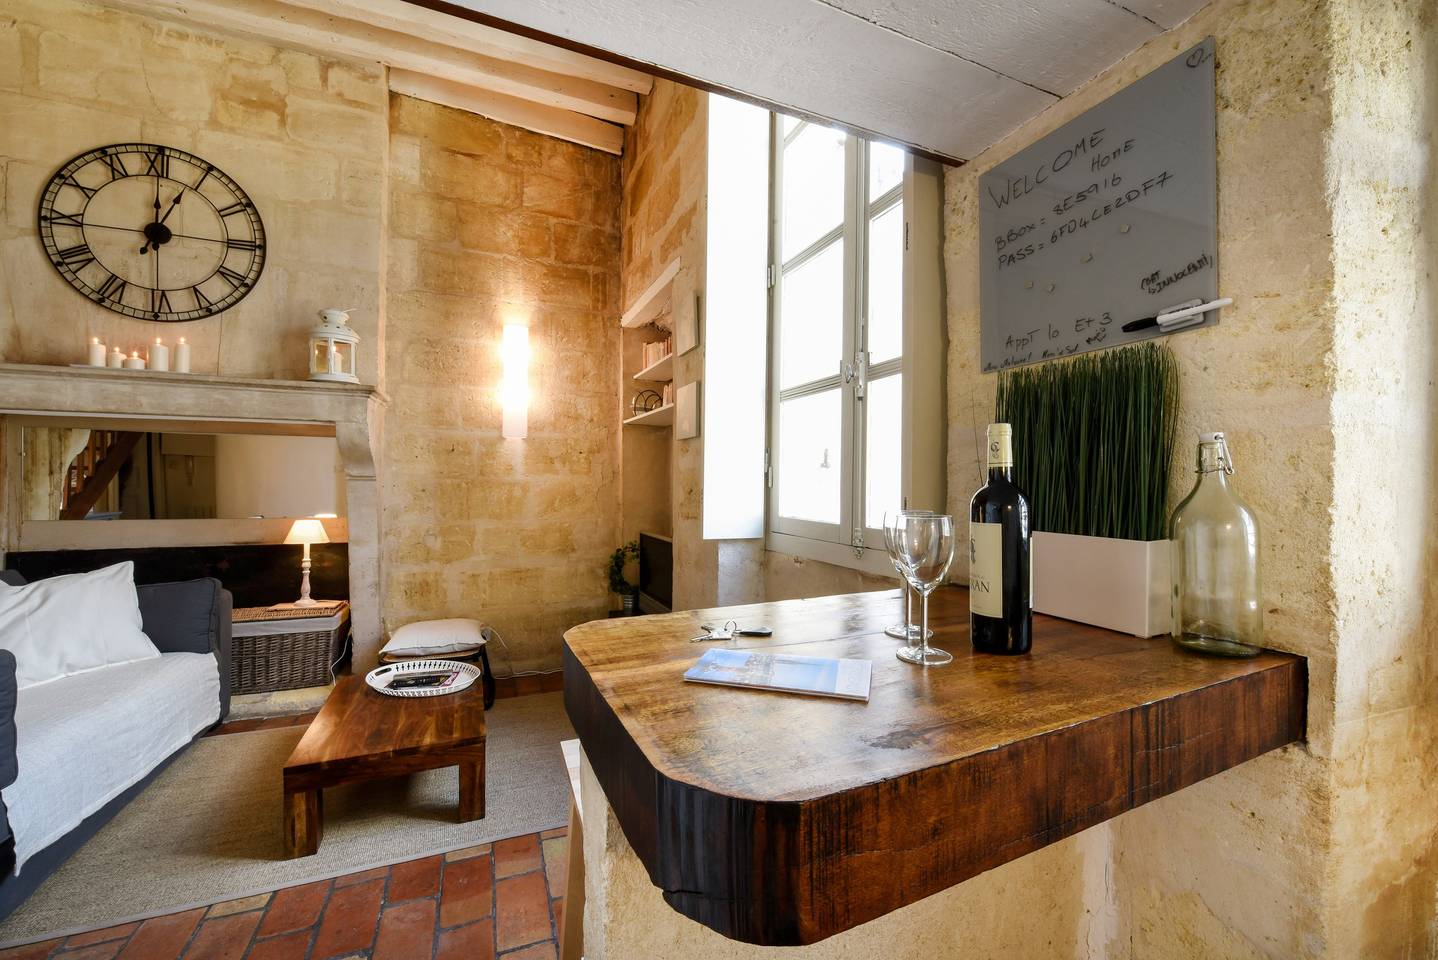 Location Bordeaux Airbnb, Location T1 Bis au coeur du vieux Bordeaux